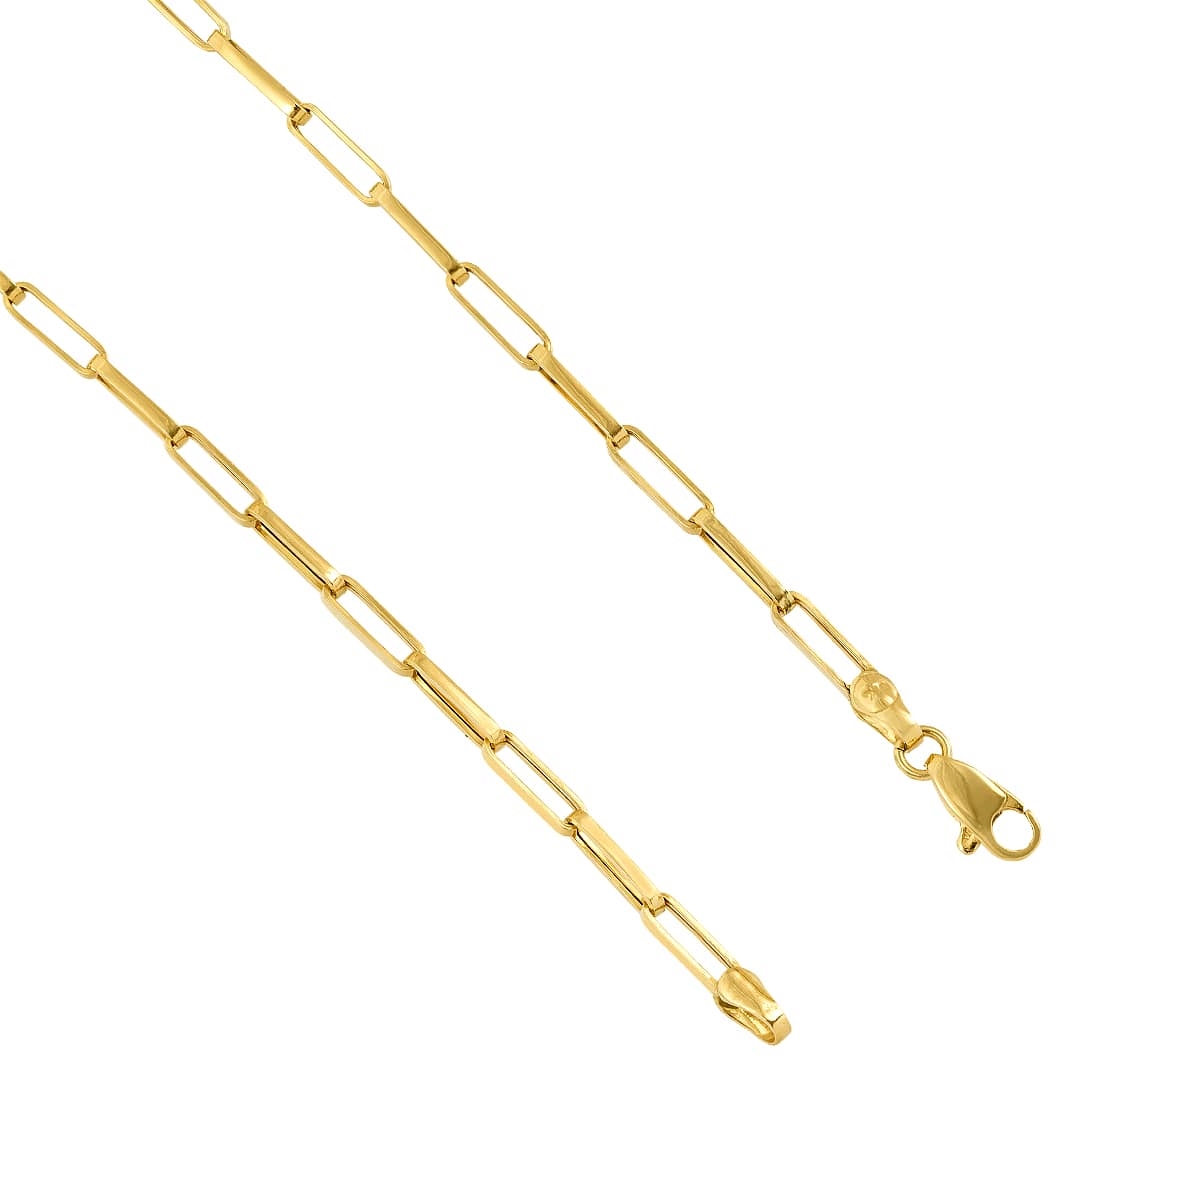 Lock frame gall bladder Pulseira de Ouro com Elos Cartier, comprimento 20 cm peso 2,7 gramas